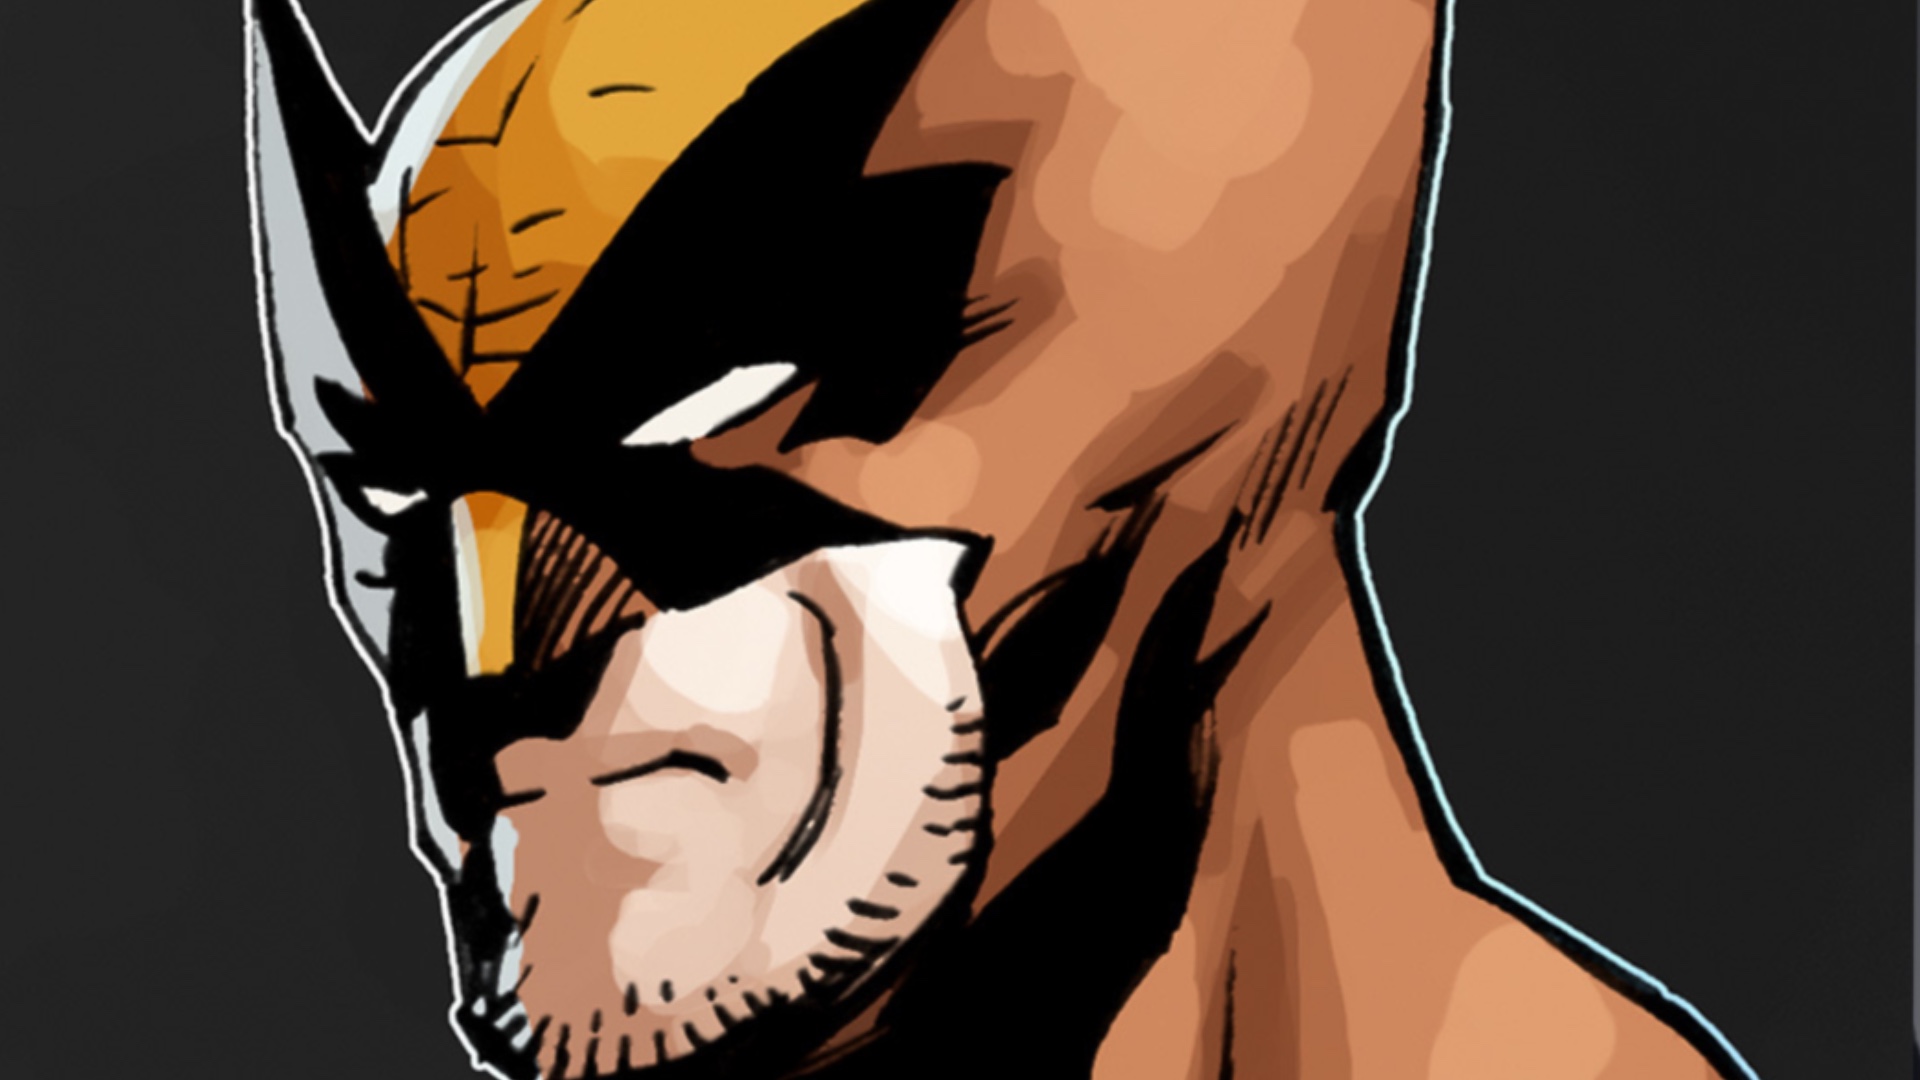 Wolverine'in Yaşamı #1 kapak